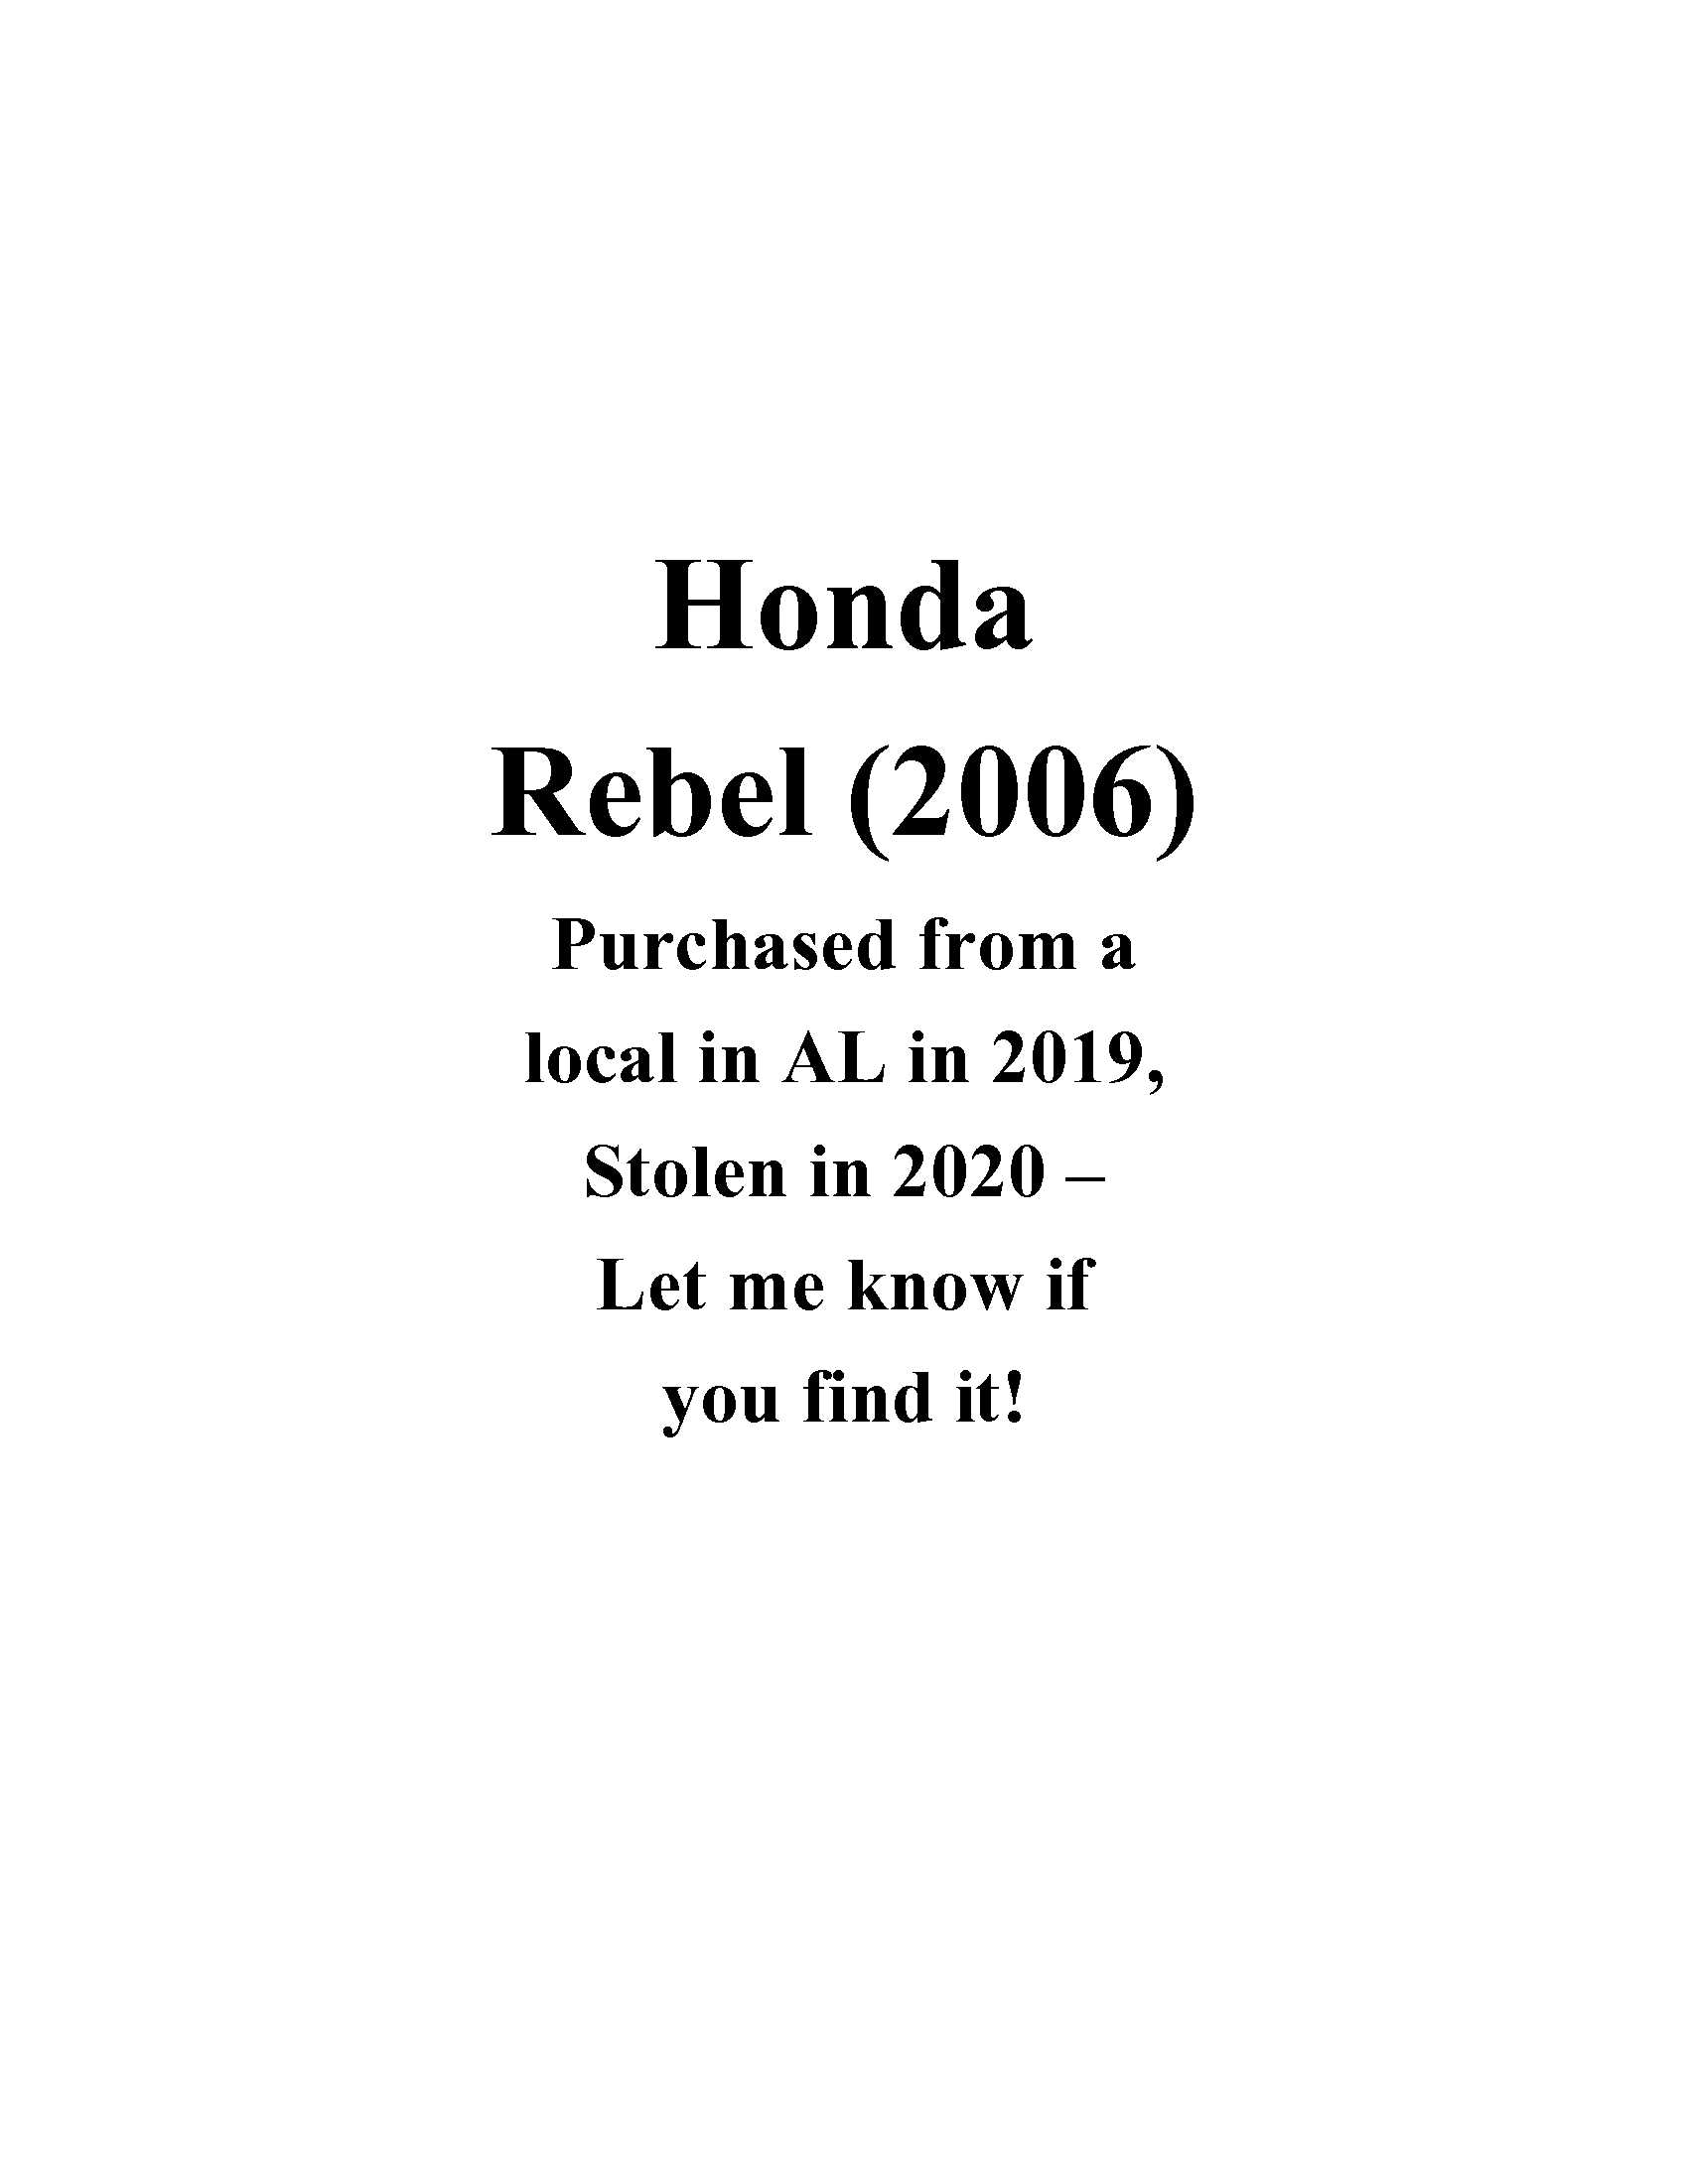 06 Honda Rebel @Starbucks